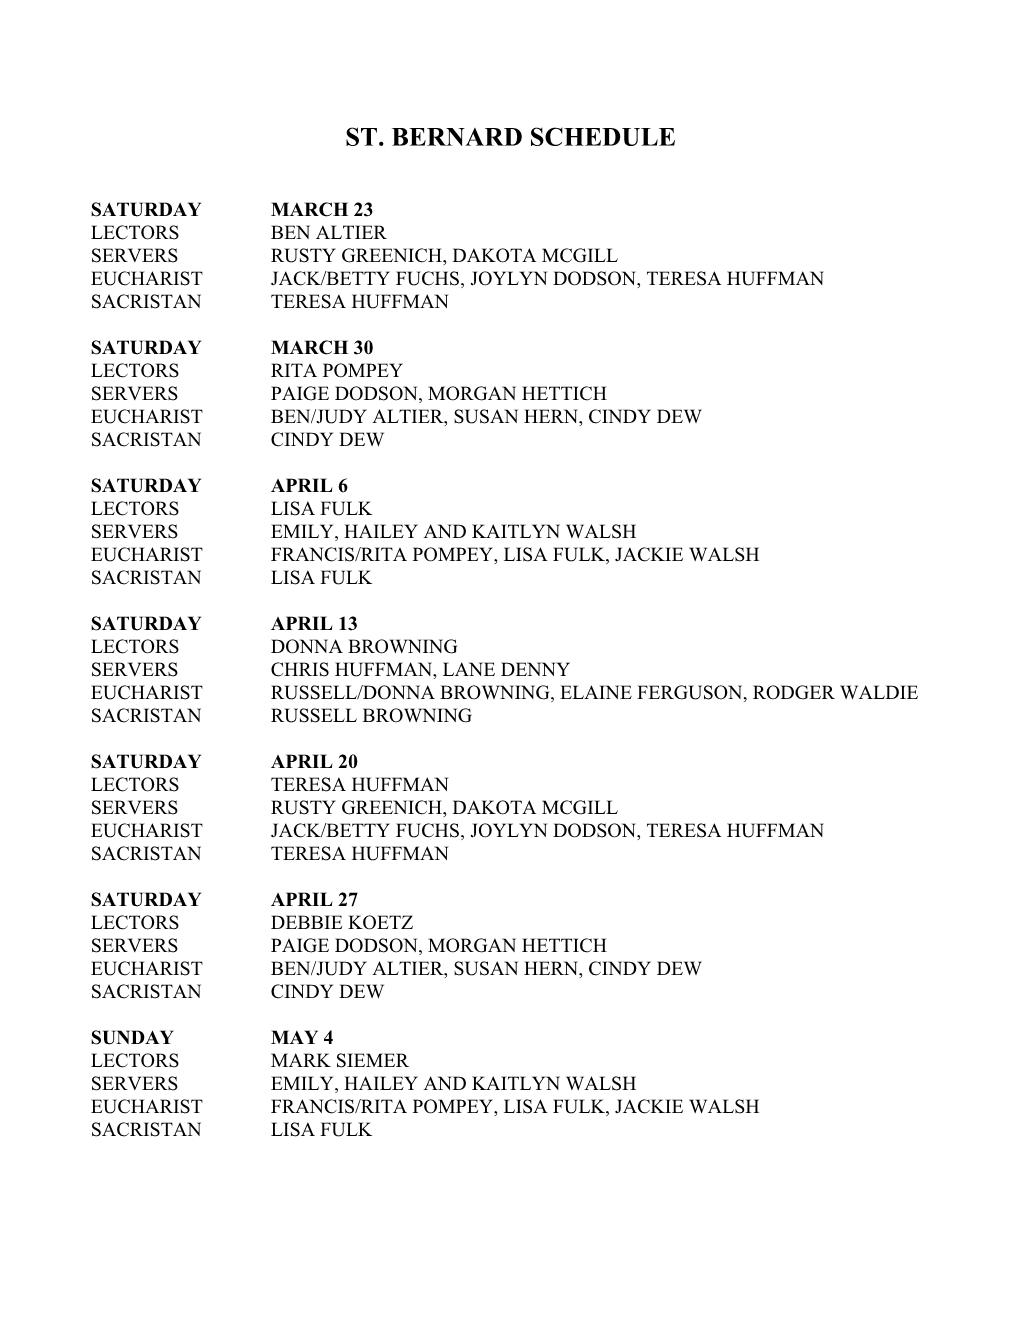 St. Bernard Schedule